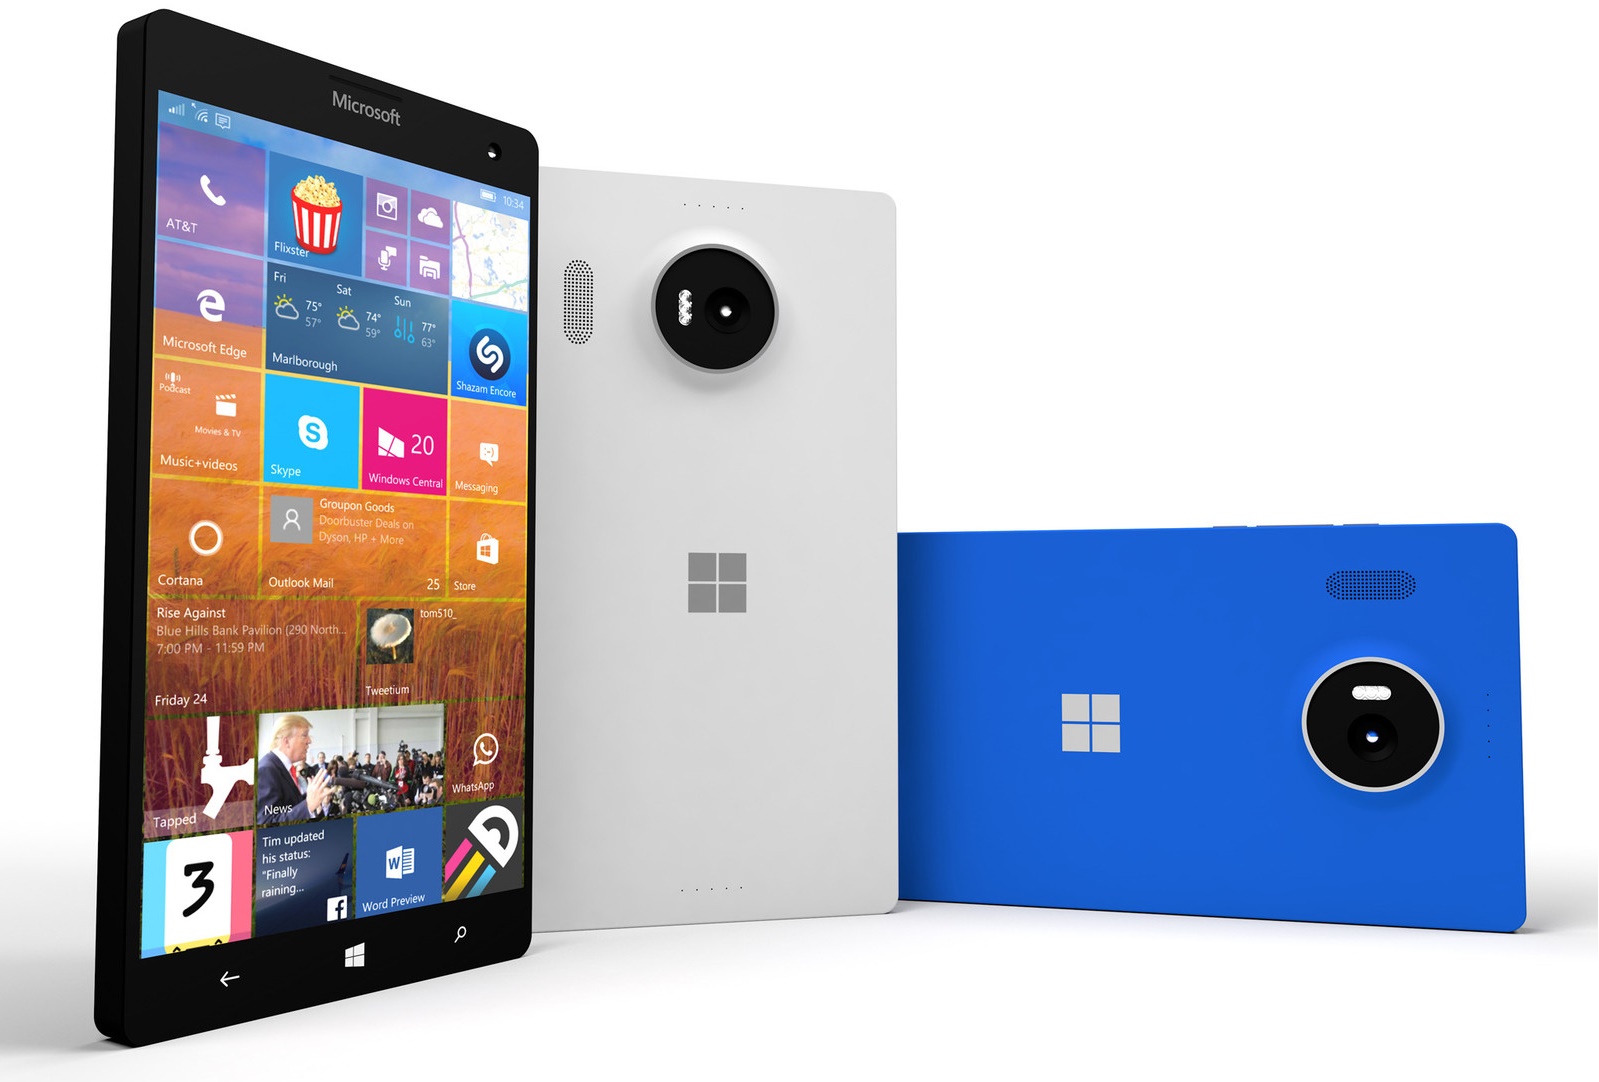 Imagem confirma que o Lumia 950 XL será impulsionado por um Snapdragon 810